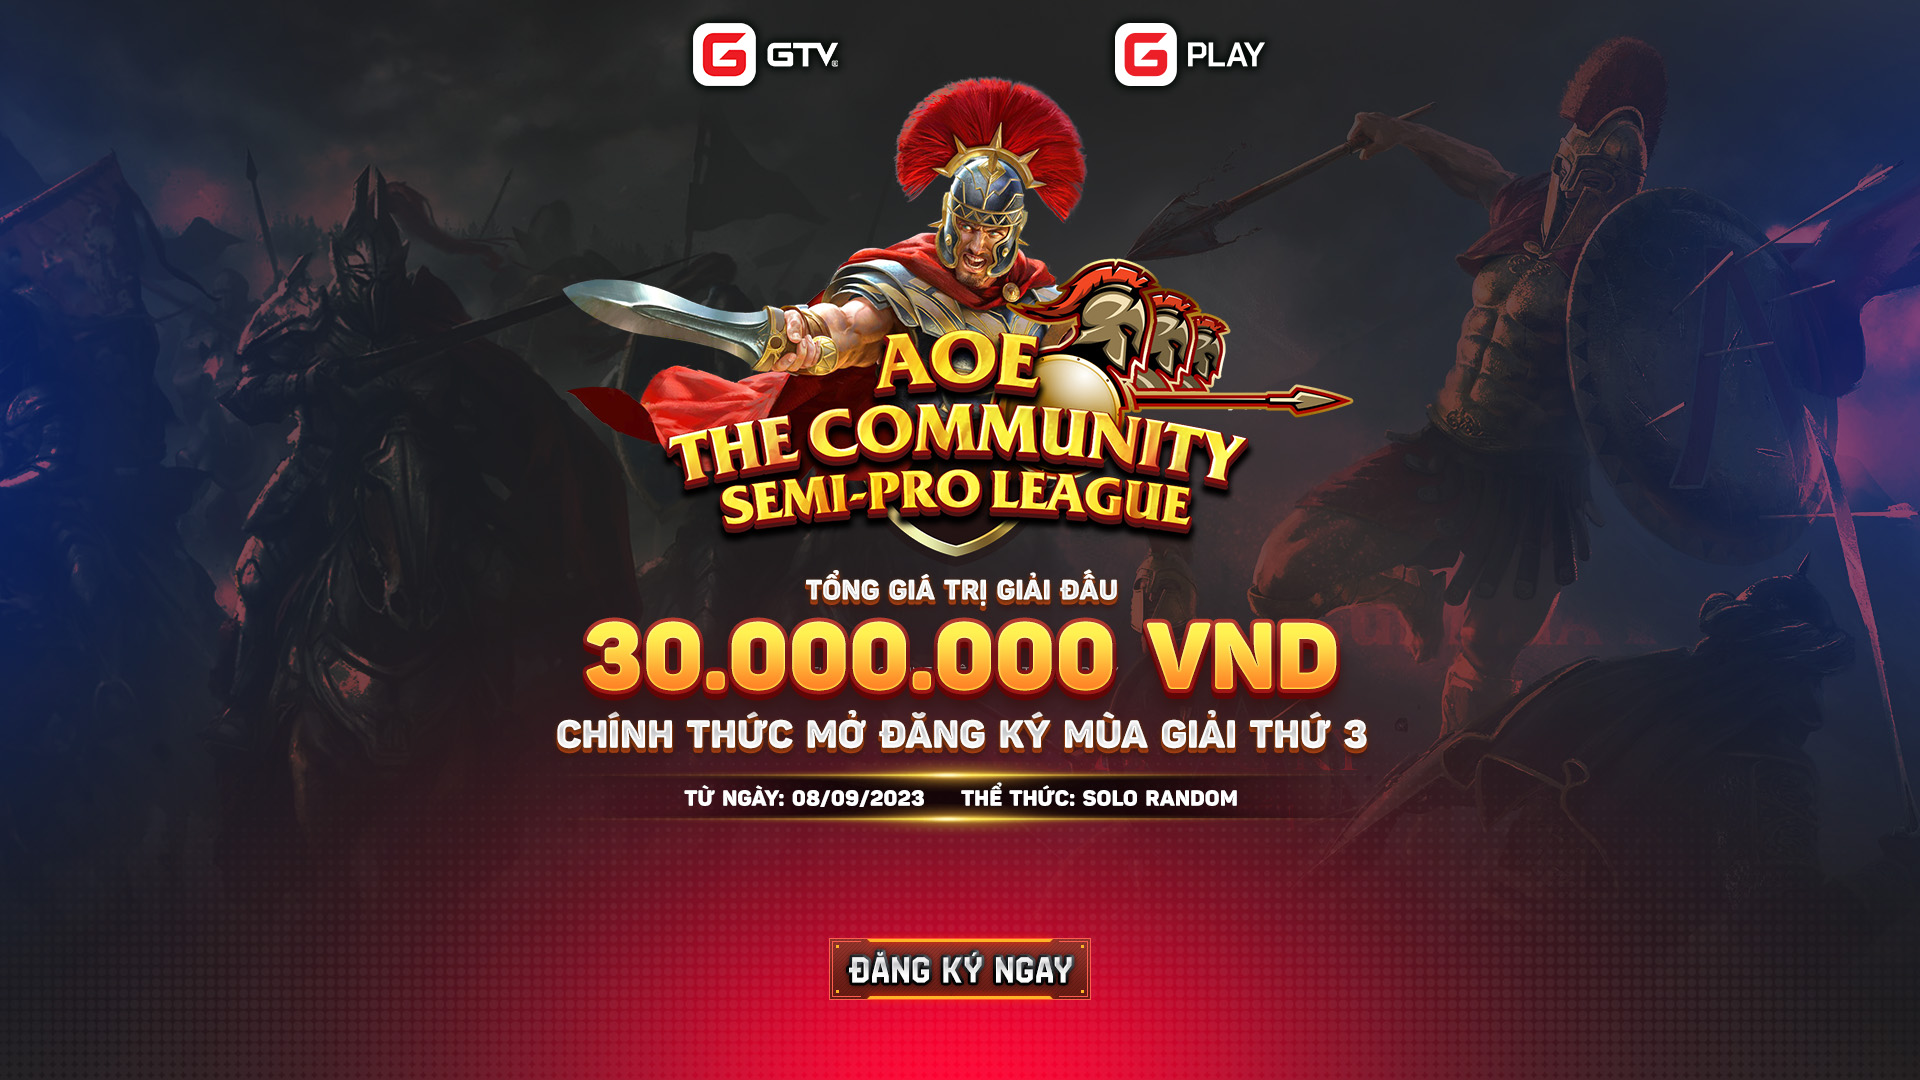 Chính thức mở đăng ký AoE The Community Semi-Pro League mùa 3, giải đấu dành cho cộng đồng bán chuyên Việt Nam